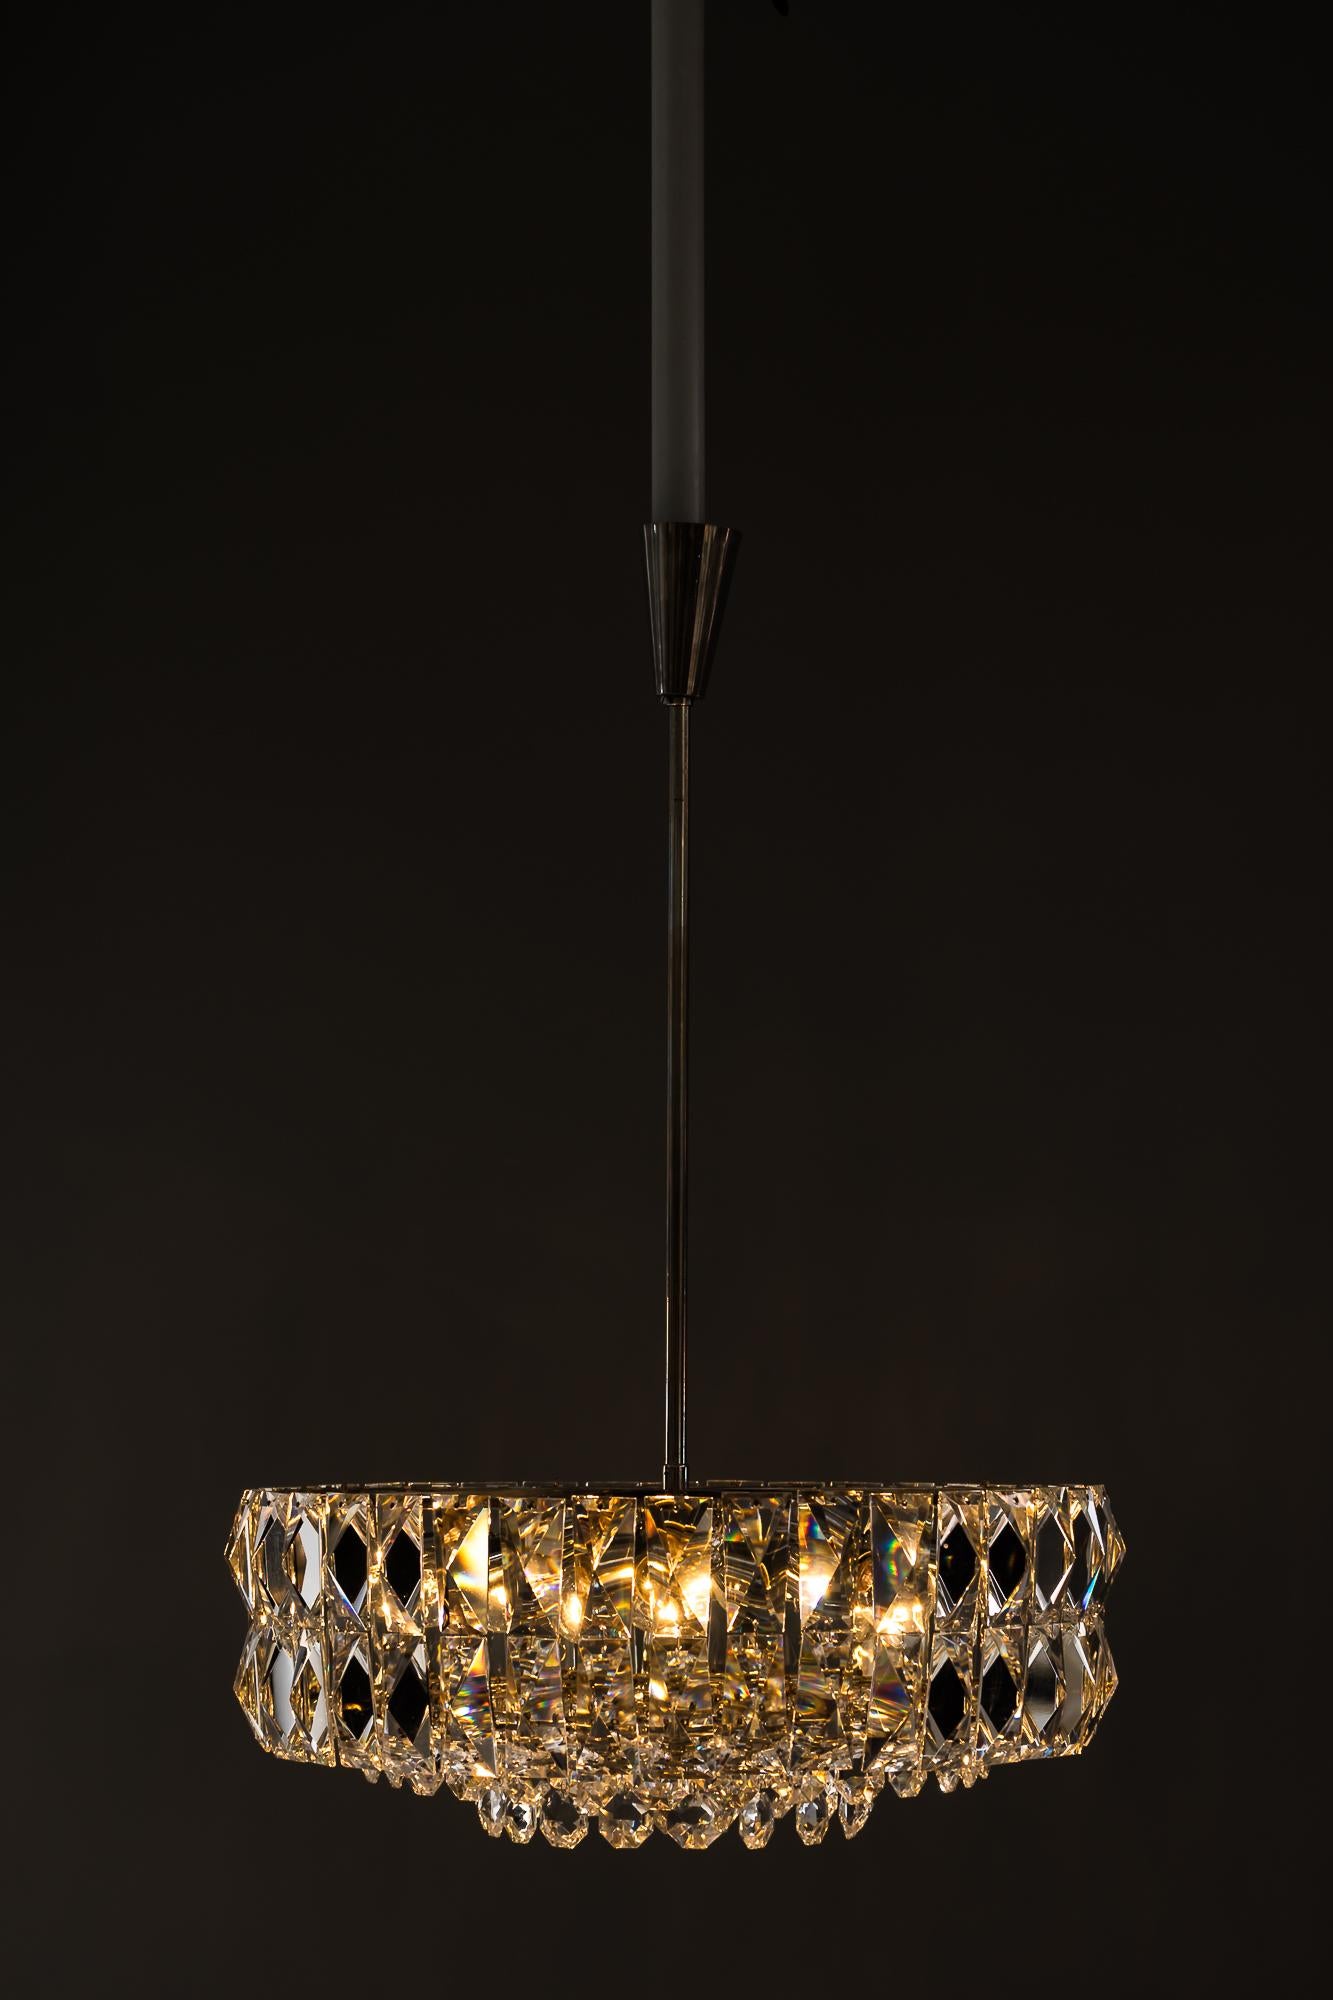 Bakalowits nickel crystal chandelier, circa 1950s
Original condition.